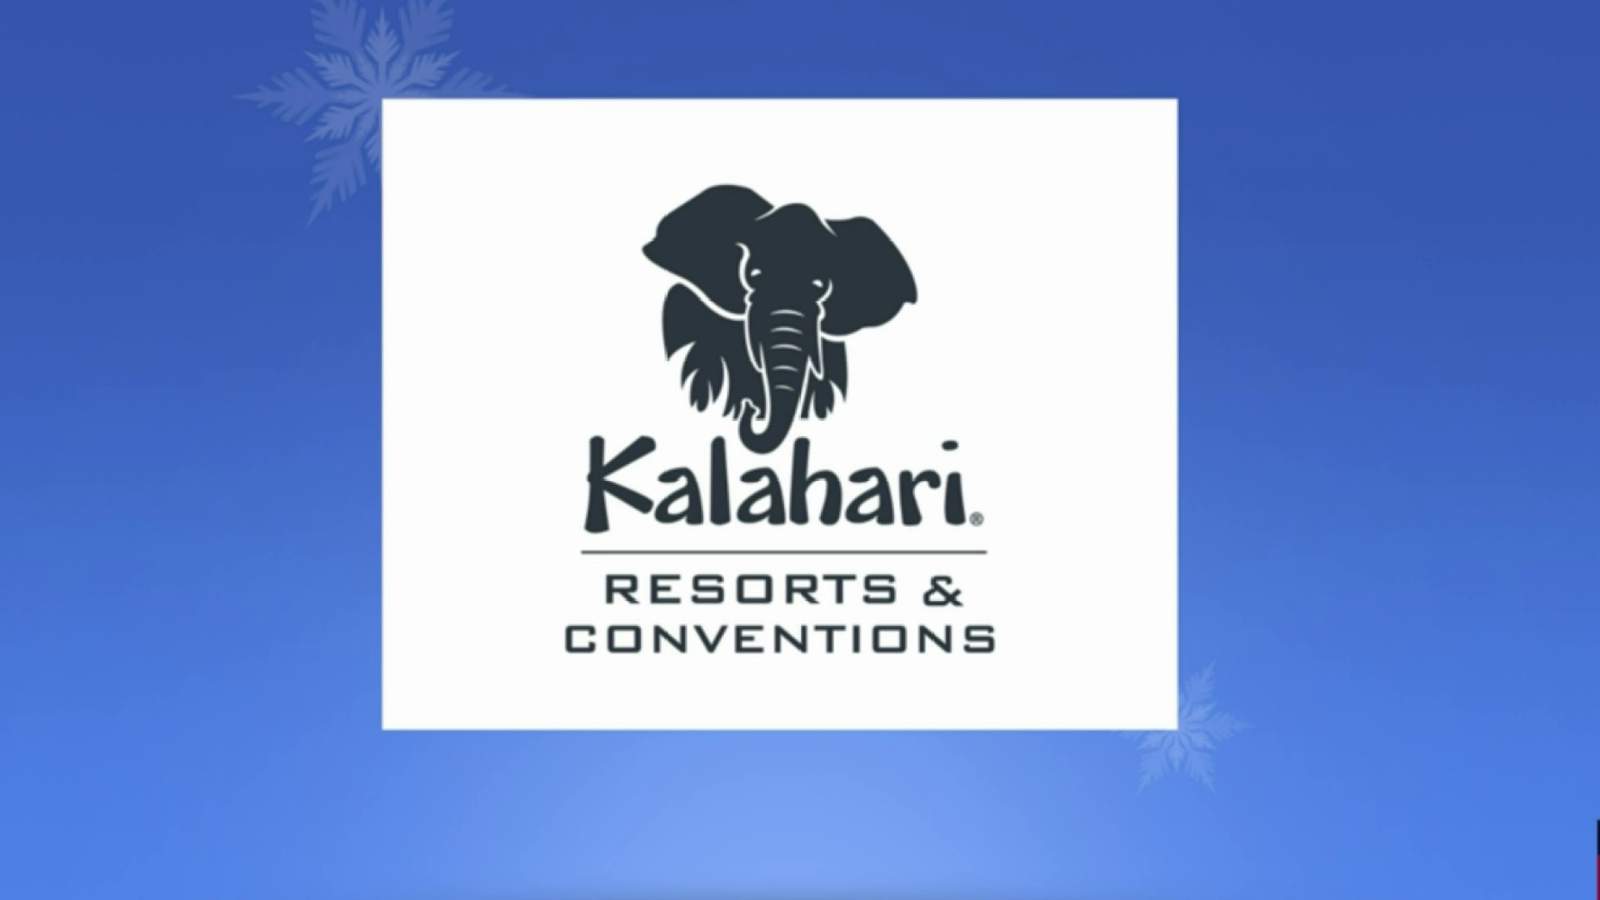 Enjoy family fun time at Kalahari Resorts